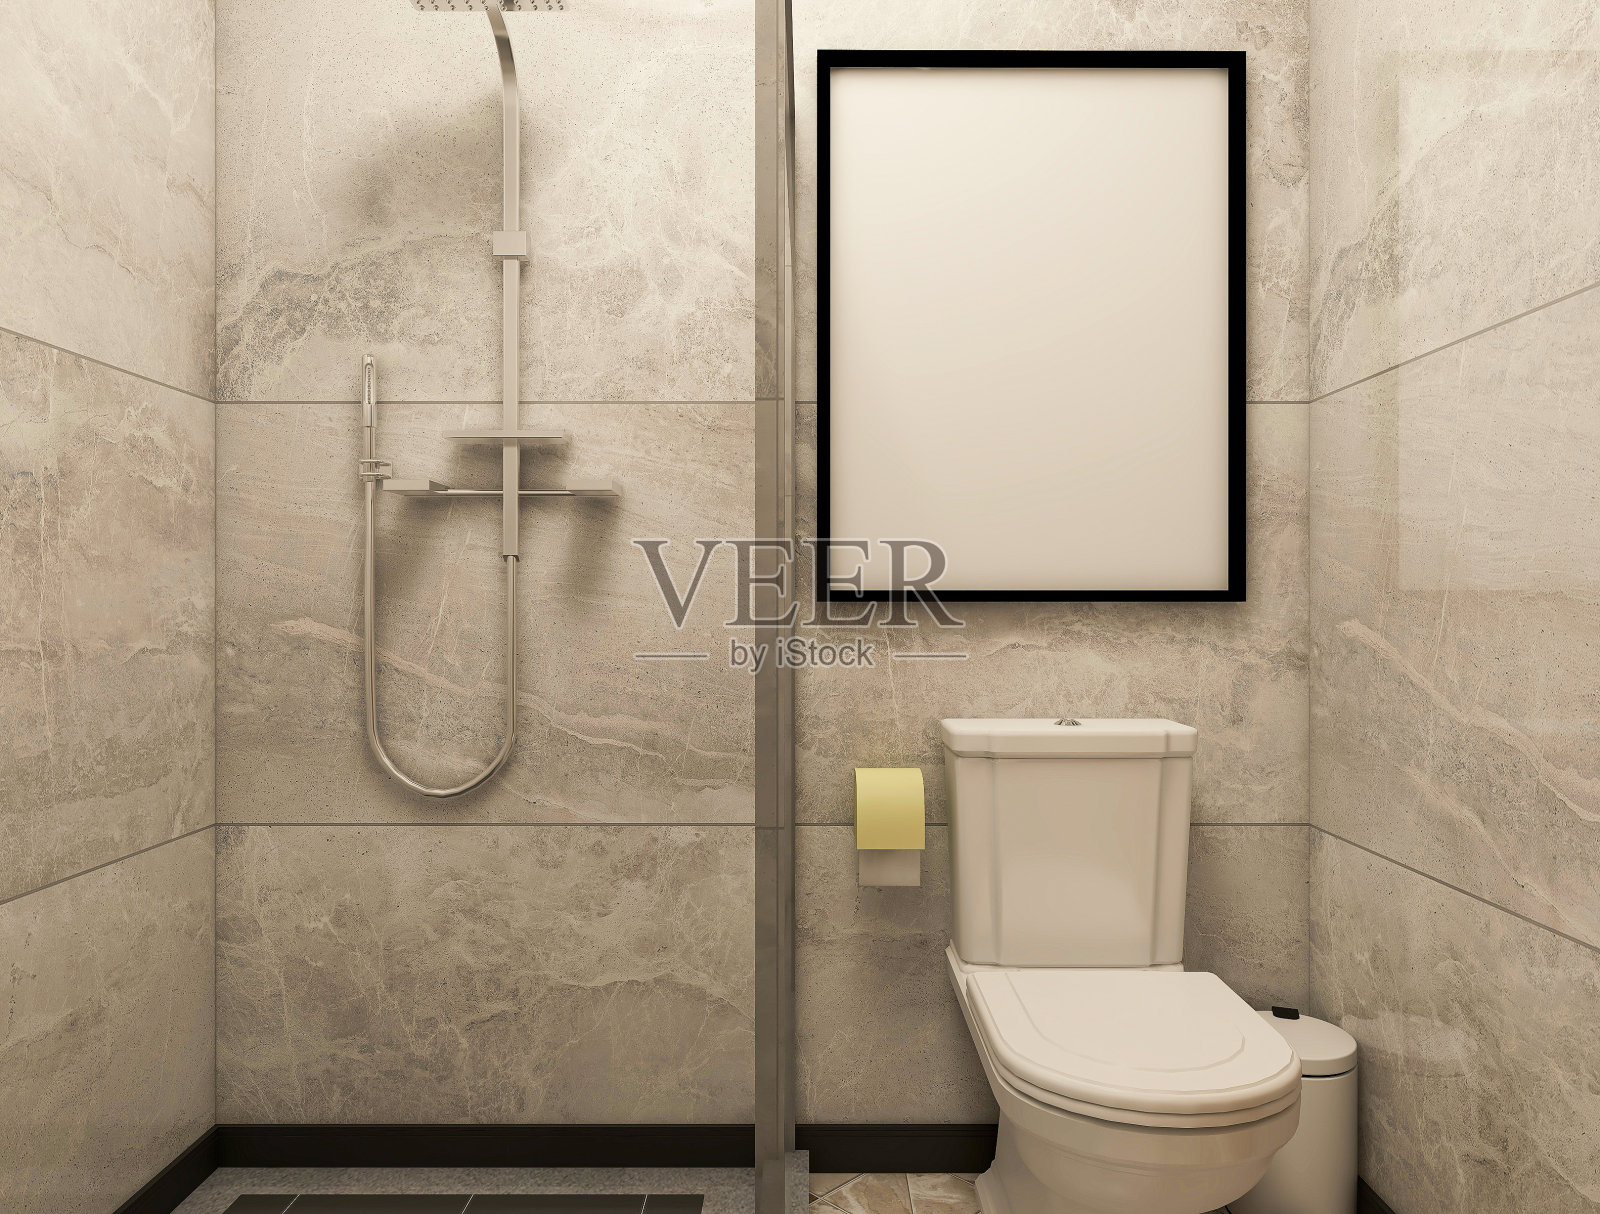 3D效果图，洁净现代住宅浴室及卫生间设计，配备盥洗台、卫生间、淋浴设备等。照片摄影图片